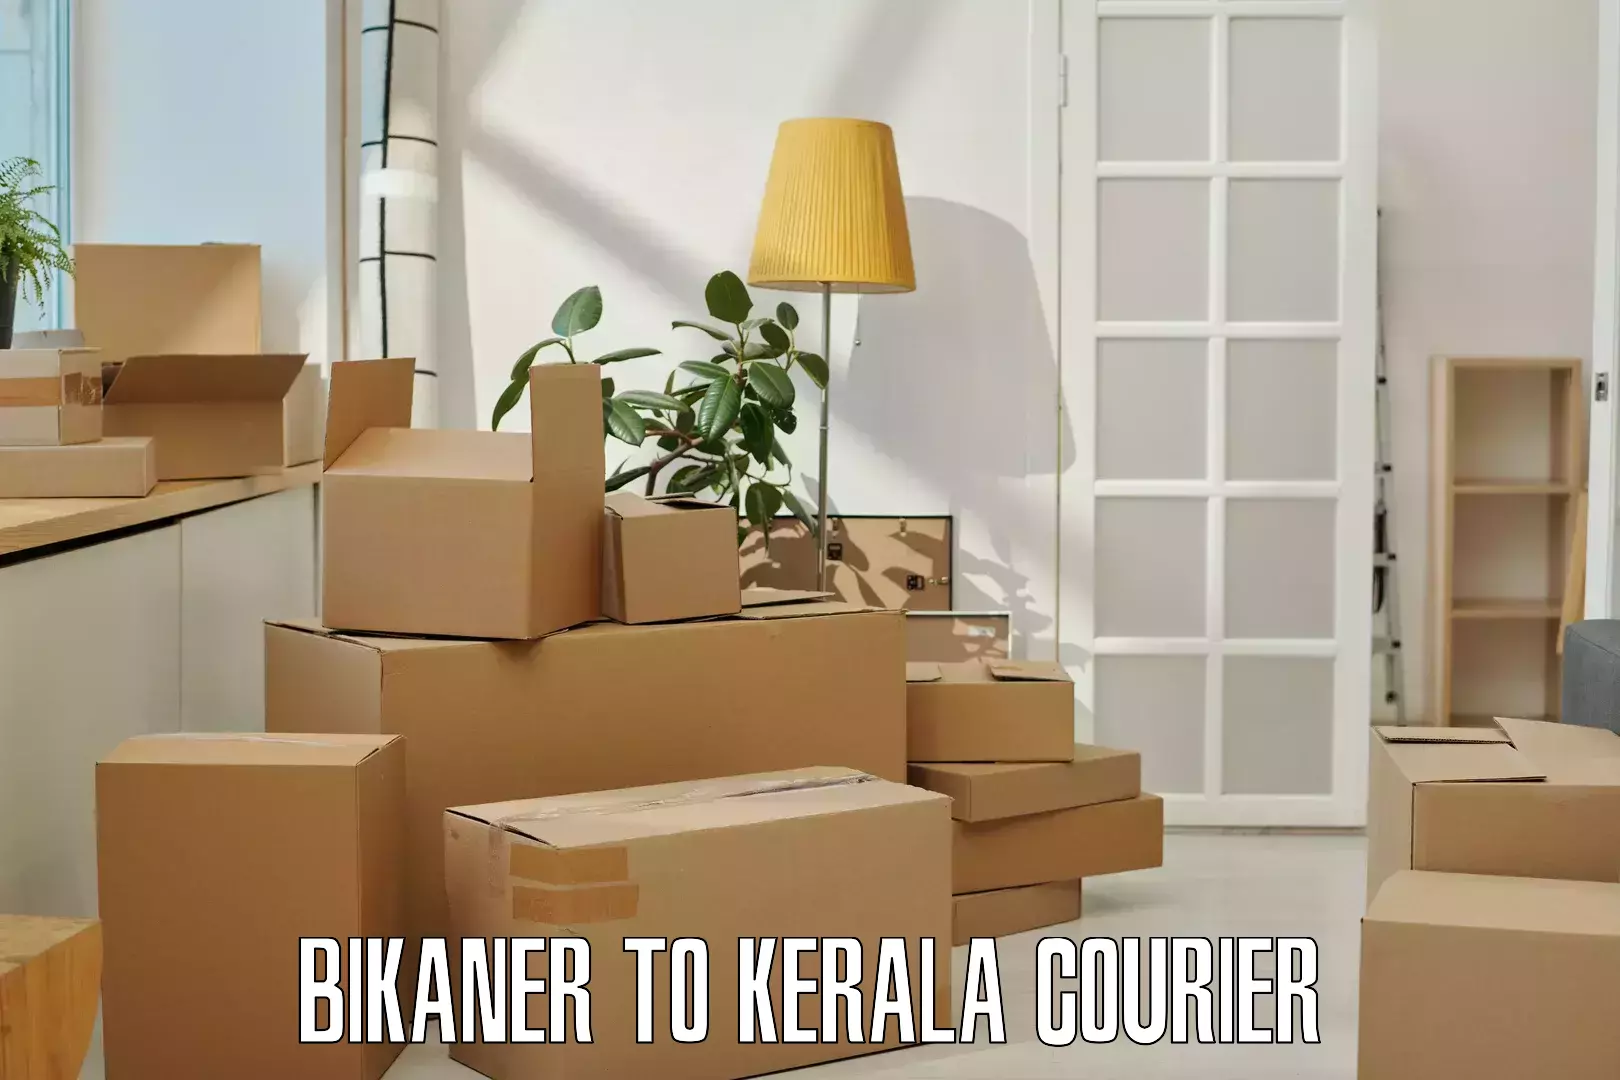 Efficient logistics management Bikaner to Manjeshwar